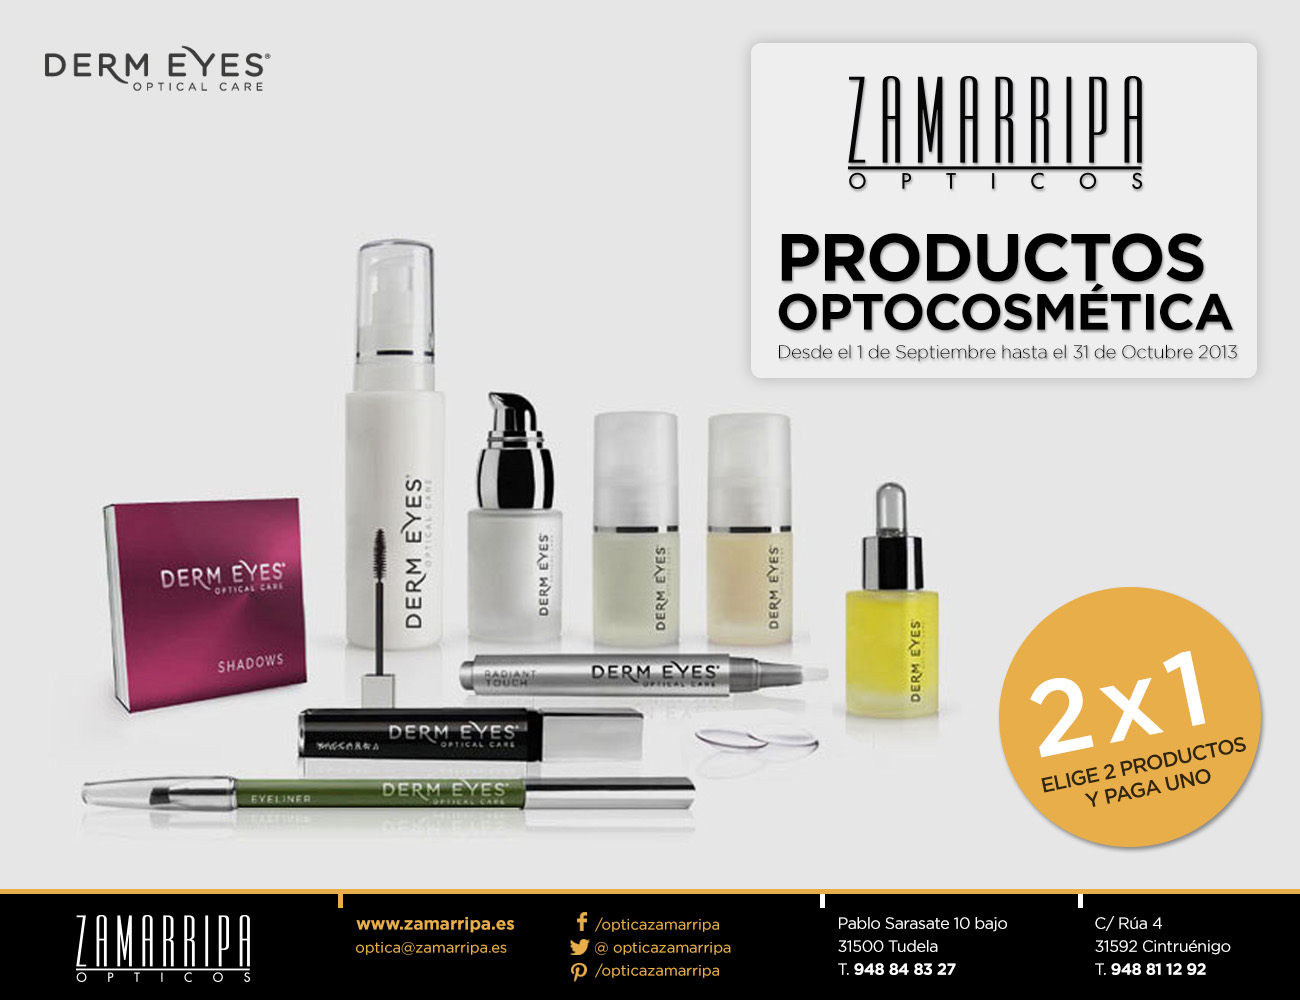 promoción optocosmética (Derm Eyes) en Zamarripa Ópticos